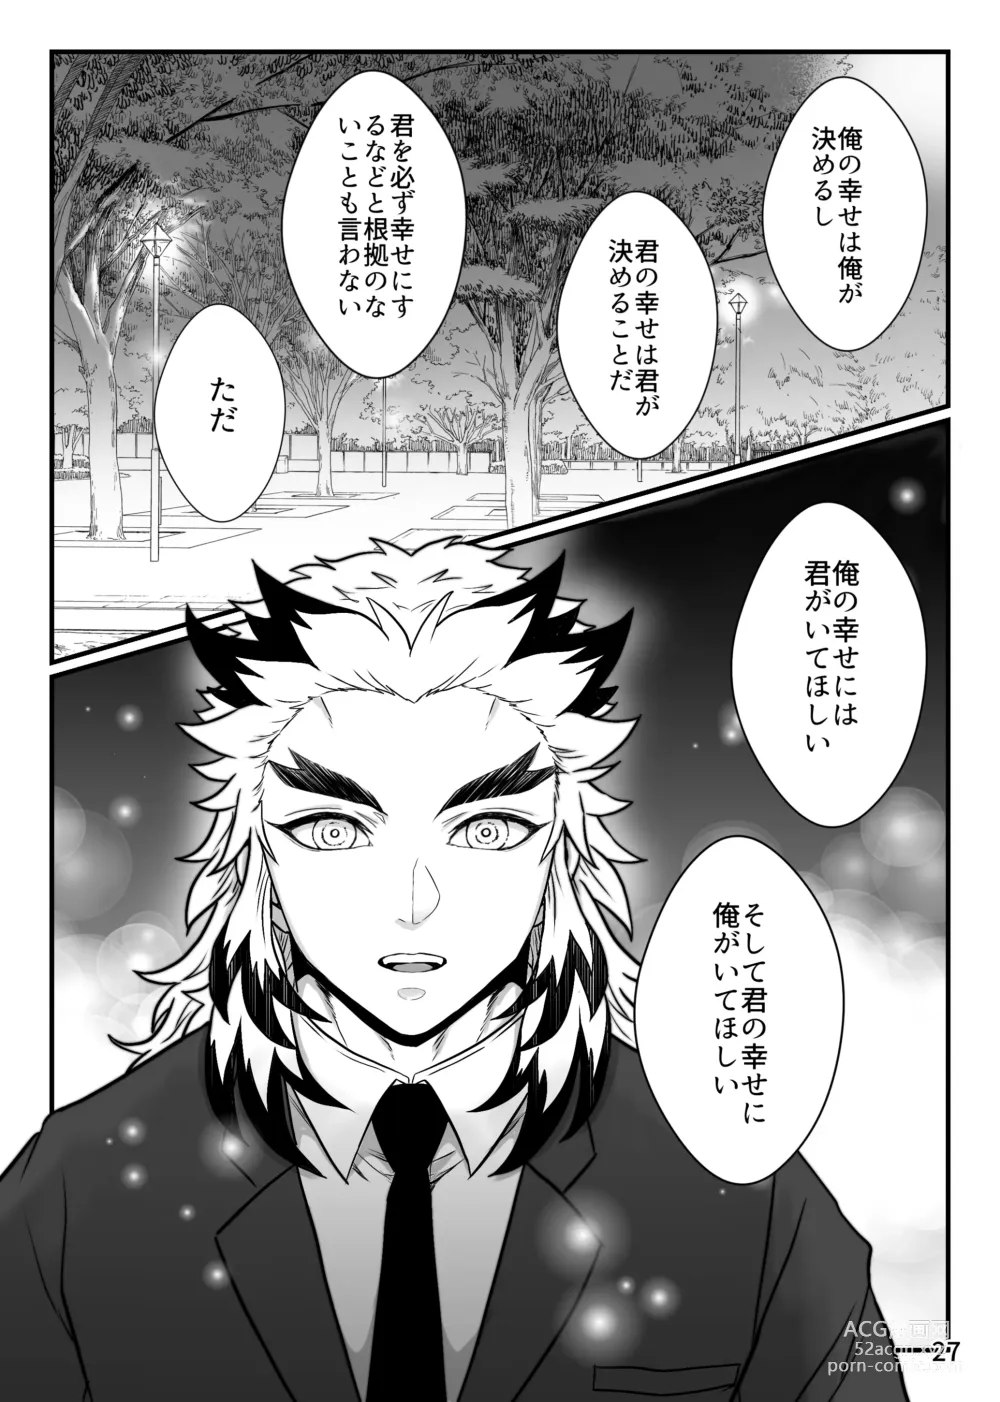 Page 27 of doujinshi Kono Gekijou o Shirazu ni